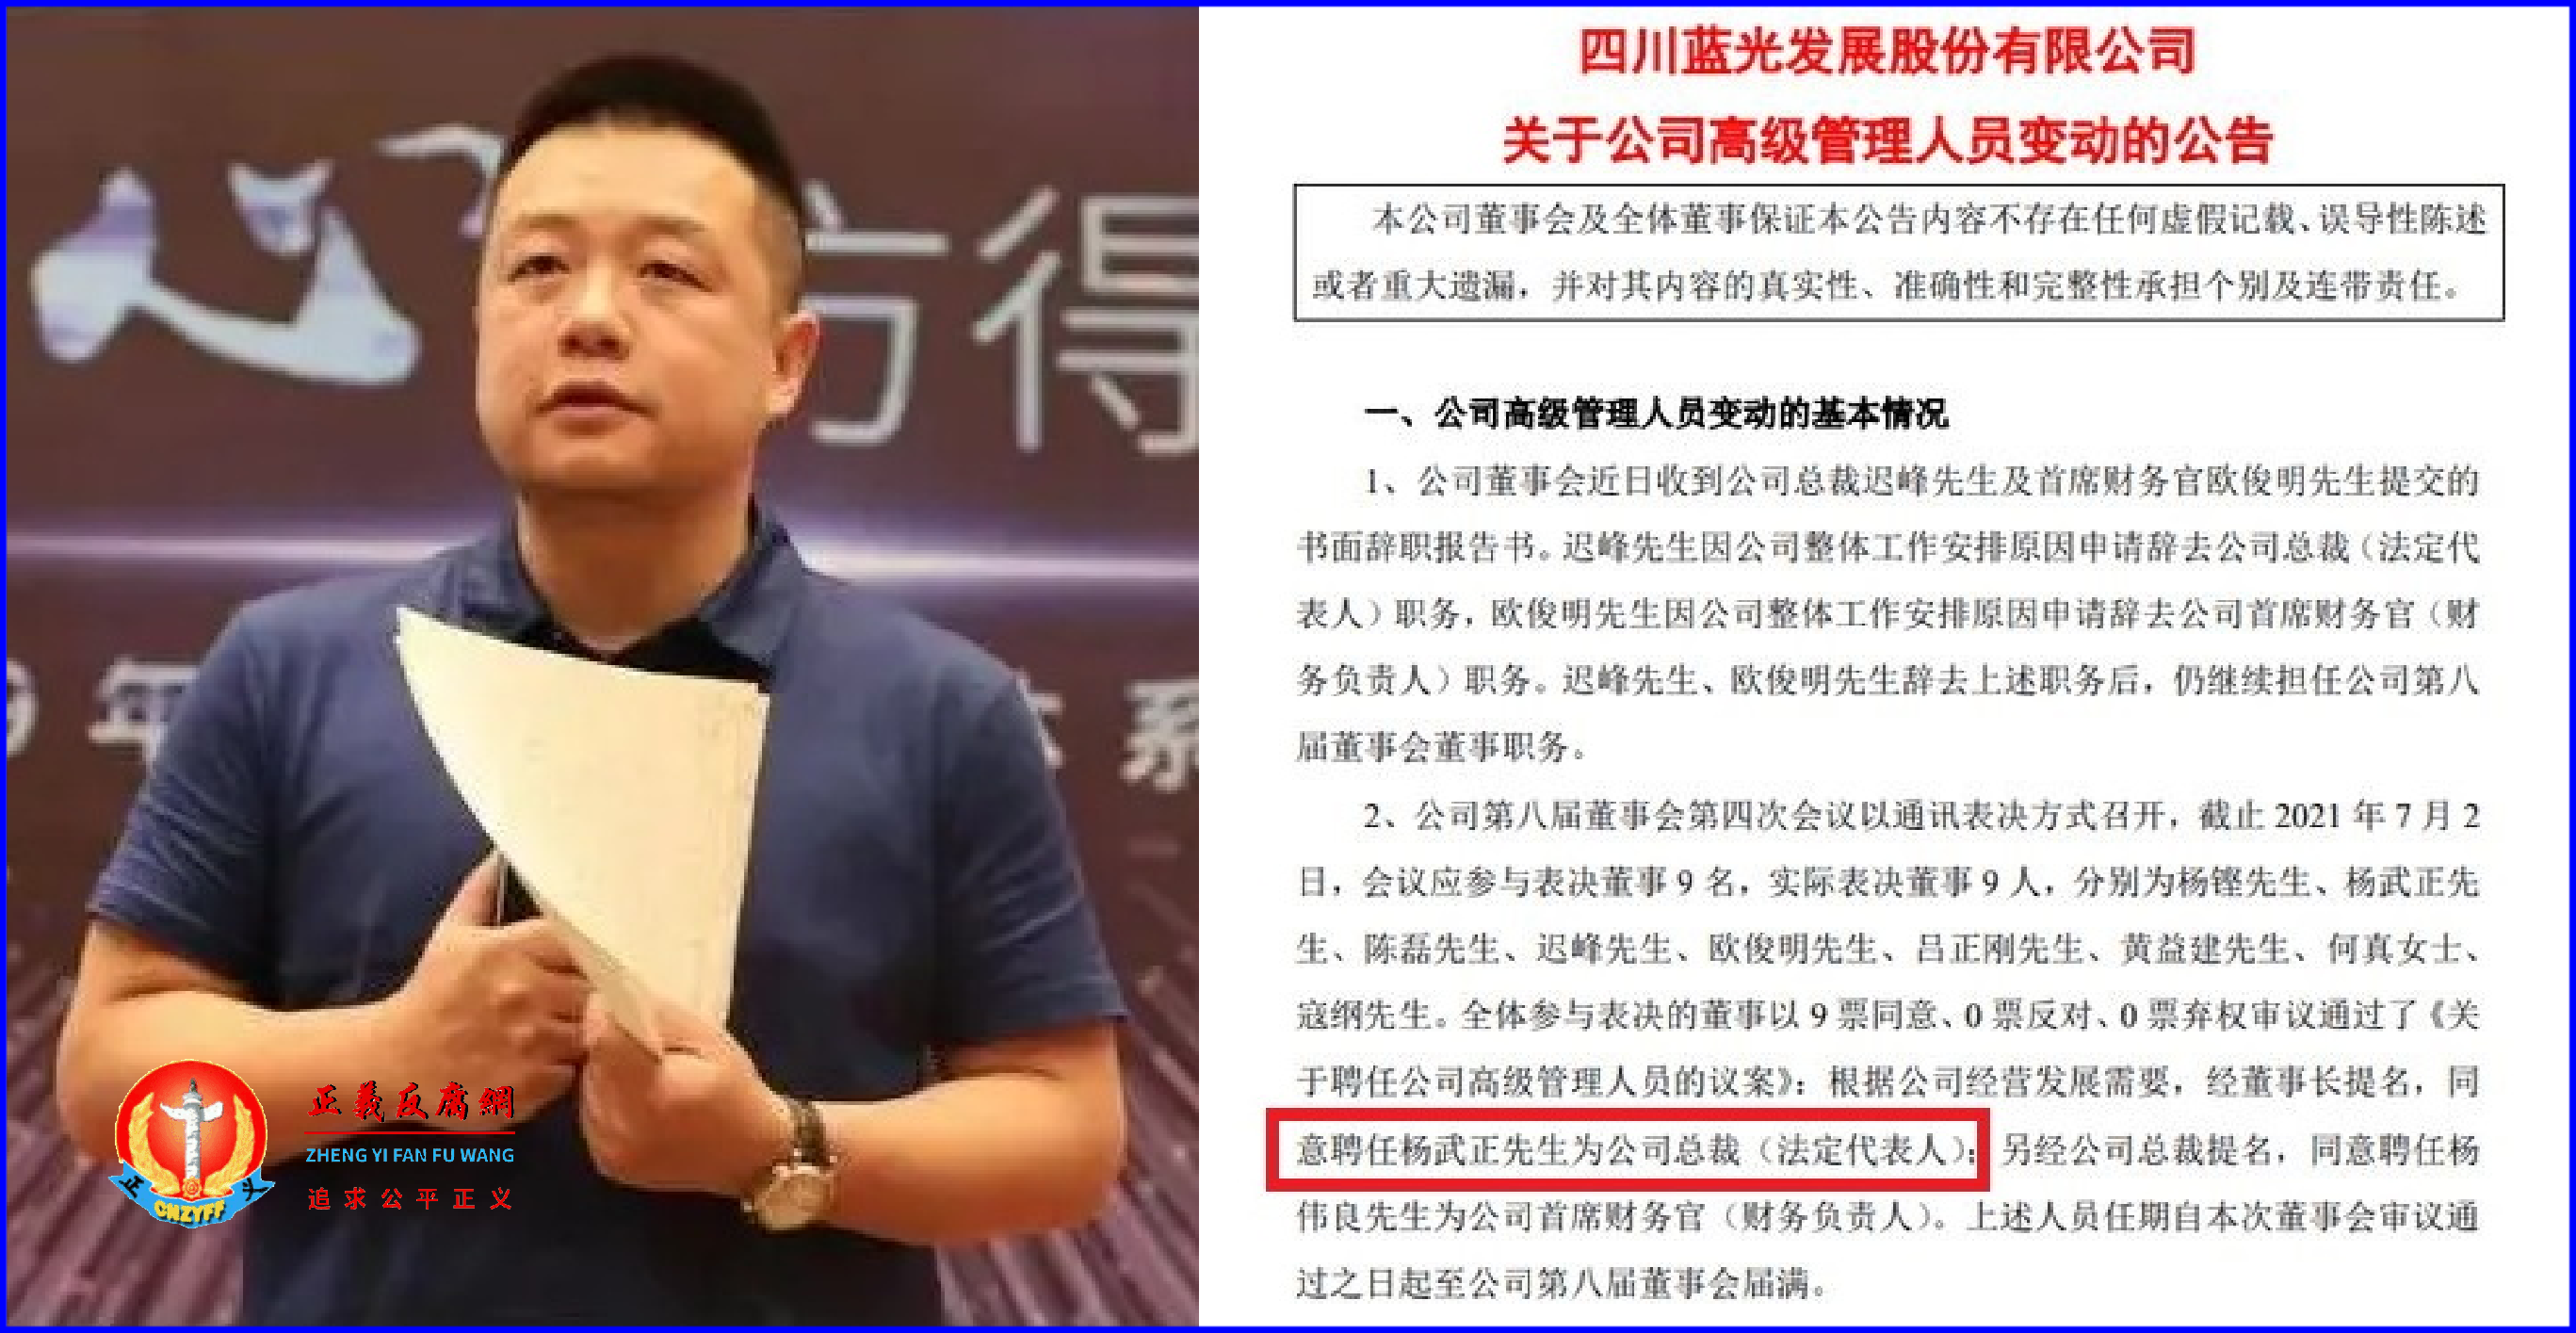 27岁的四川蓝光发展股份有限公司总裁杨武正.png